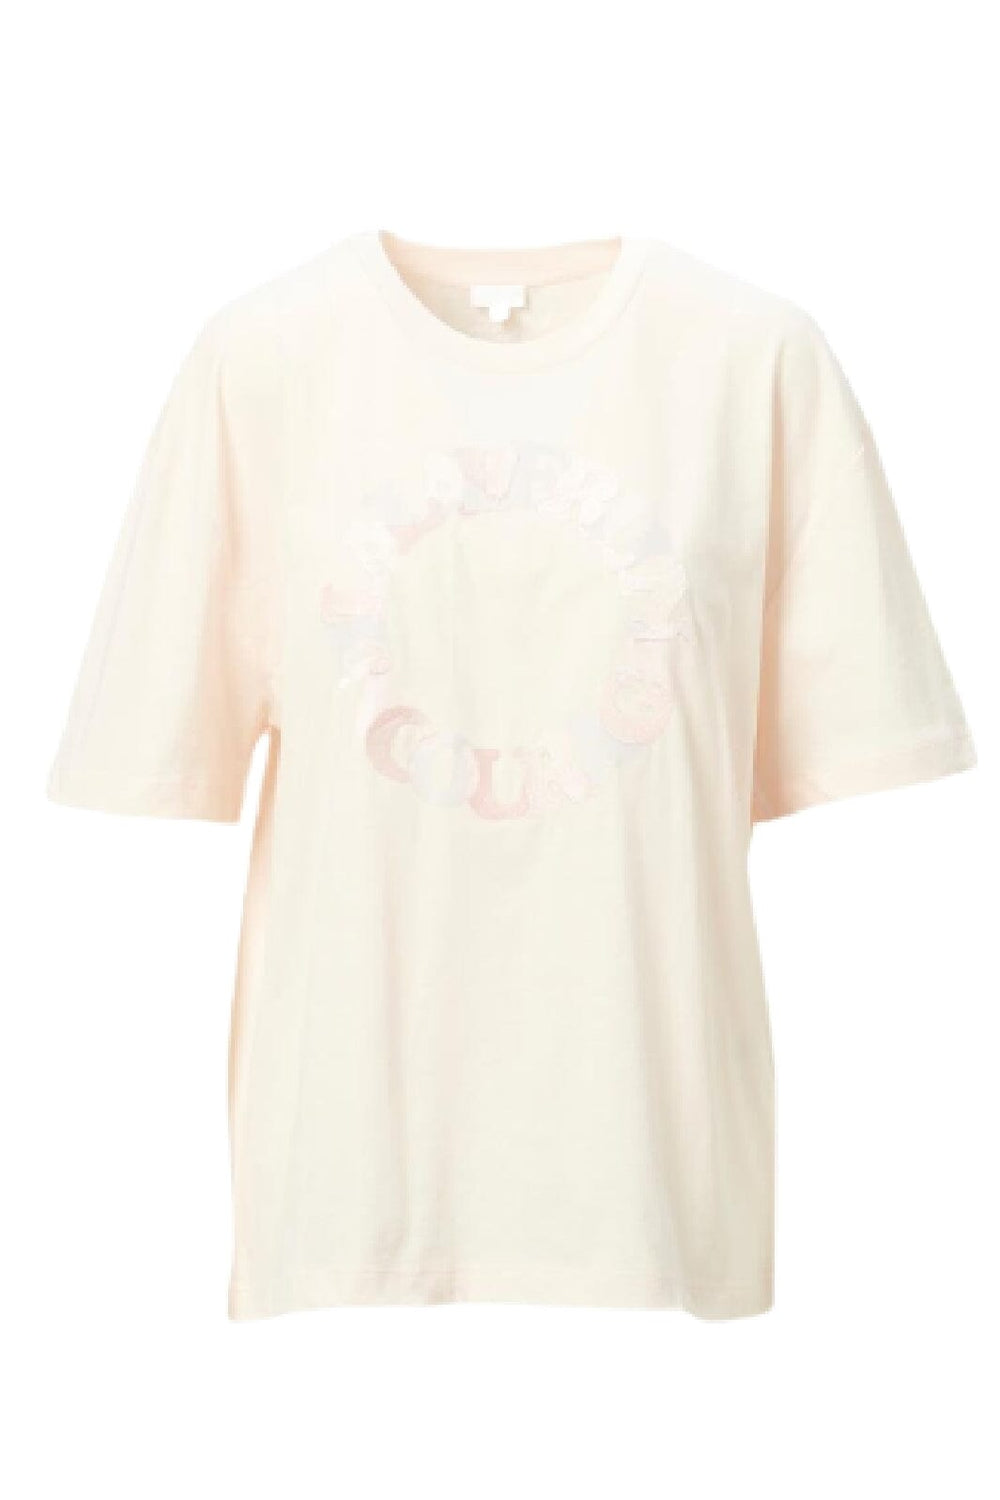 Lala Berlin - T-shirt Celia - encourage rosewater T-shirts 